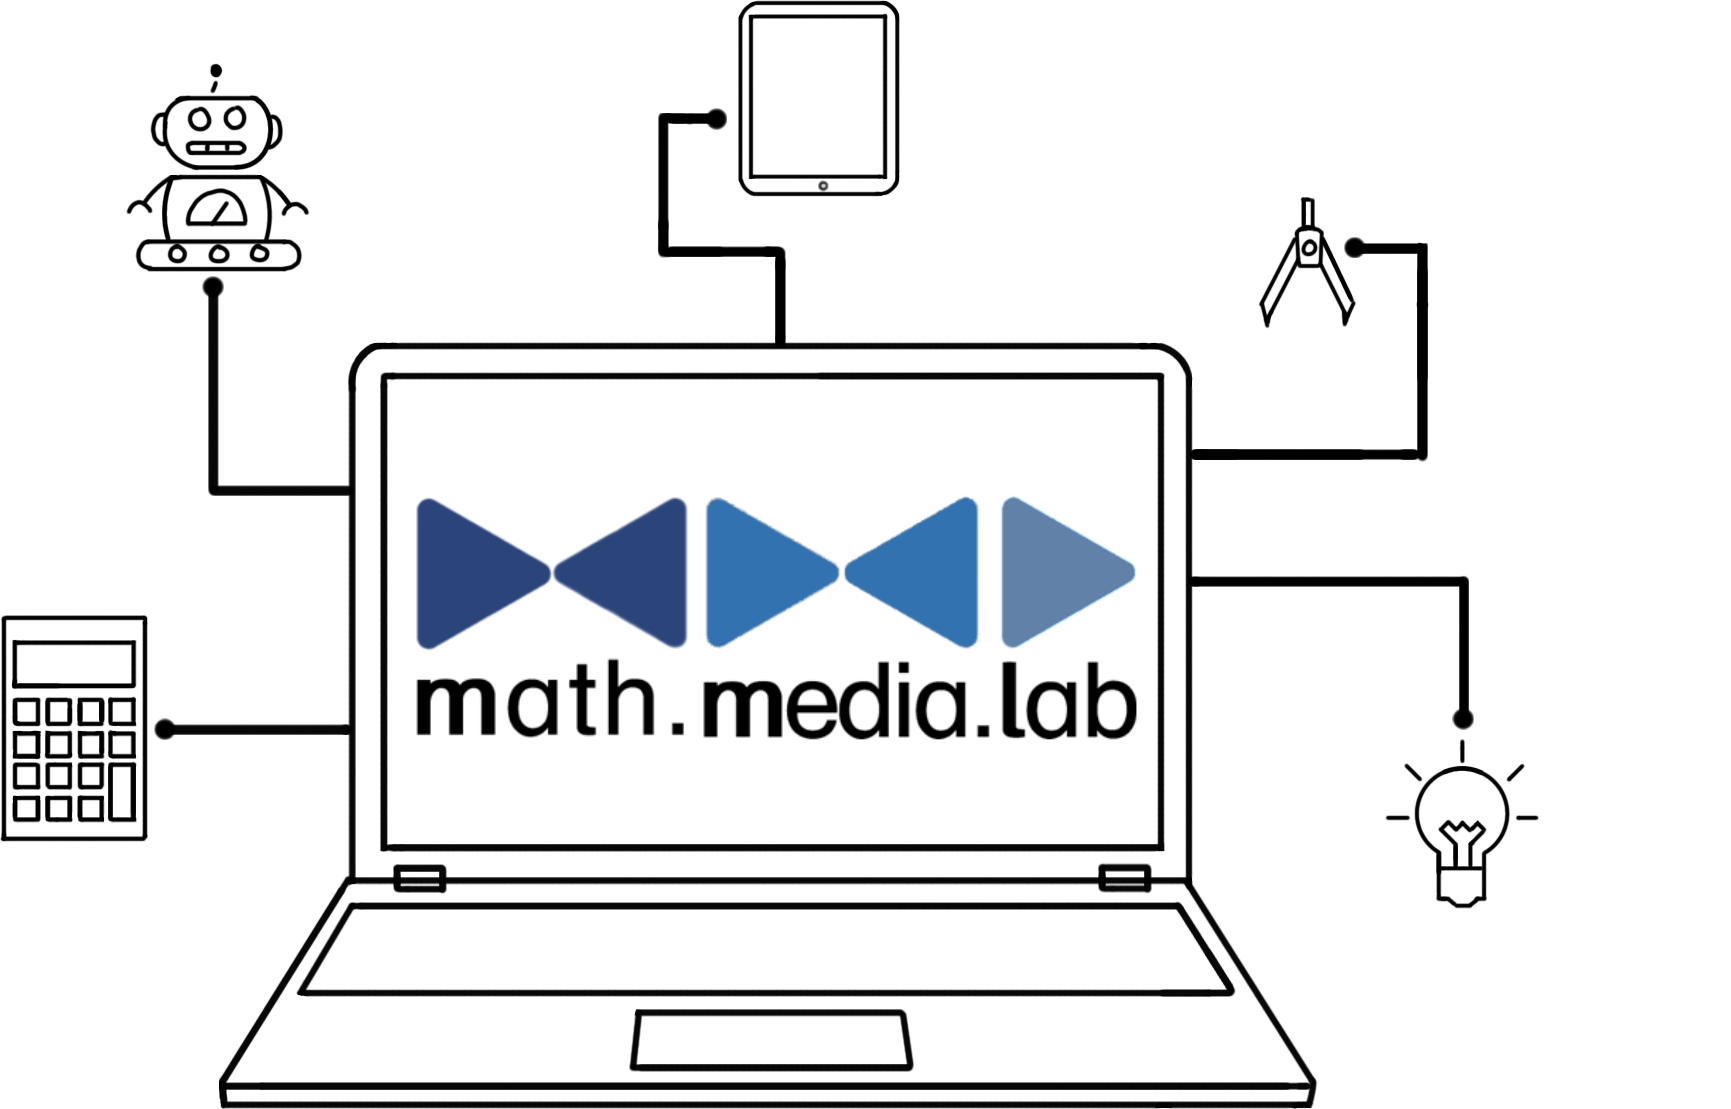 MML Logo